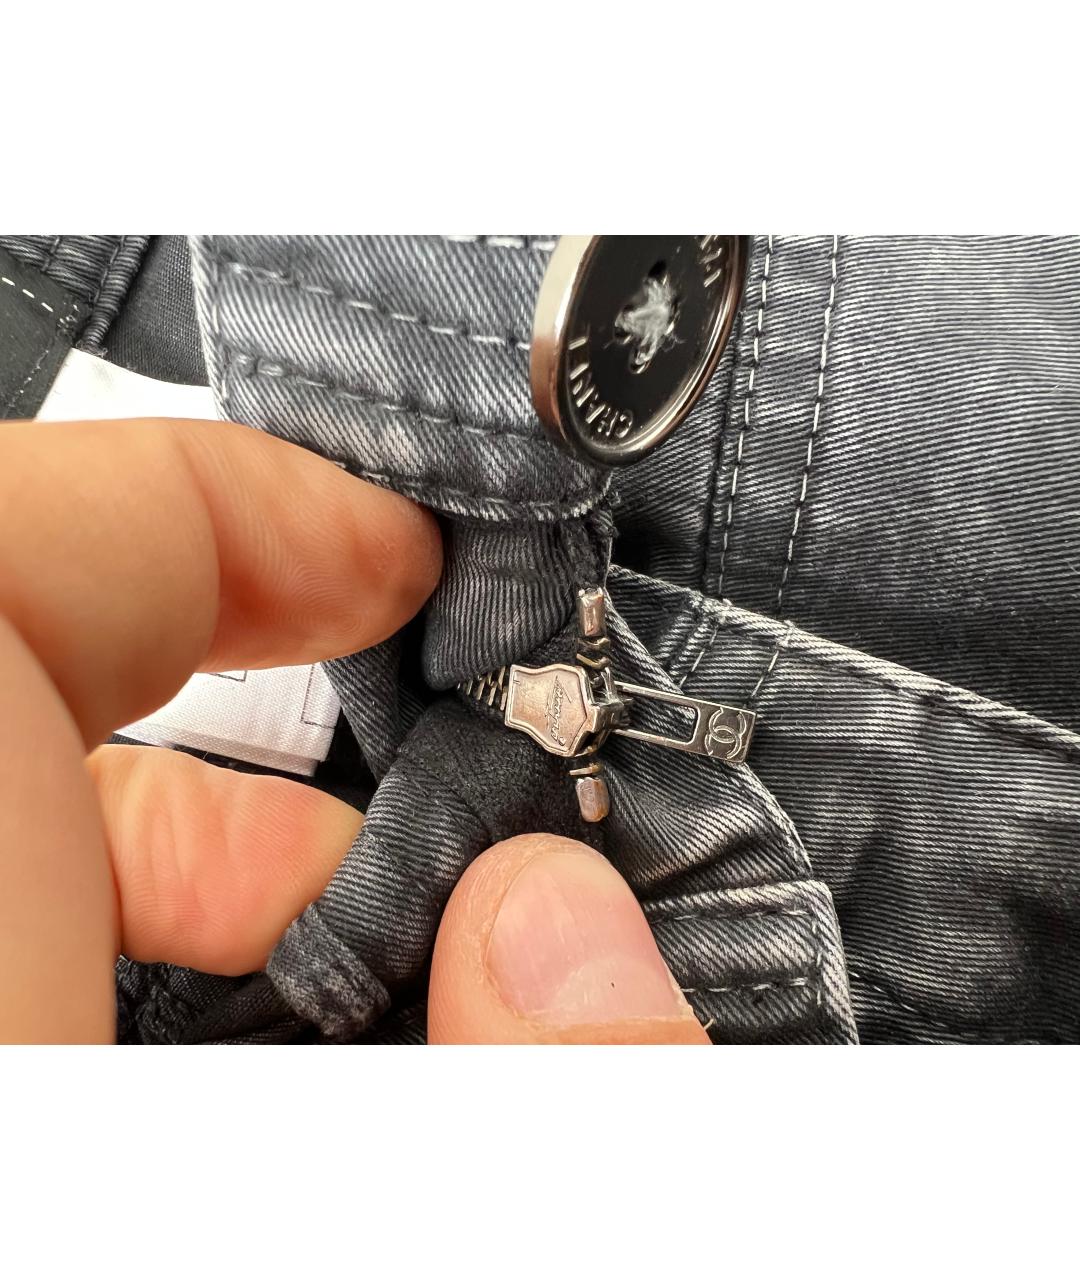 CHANEL PRE-OWNED Серые хлопко-эластановые джинсы слим, фото 7